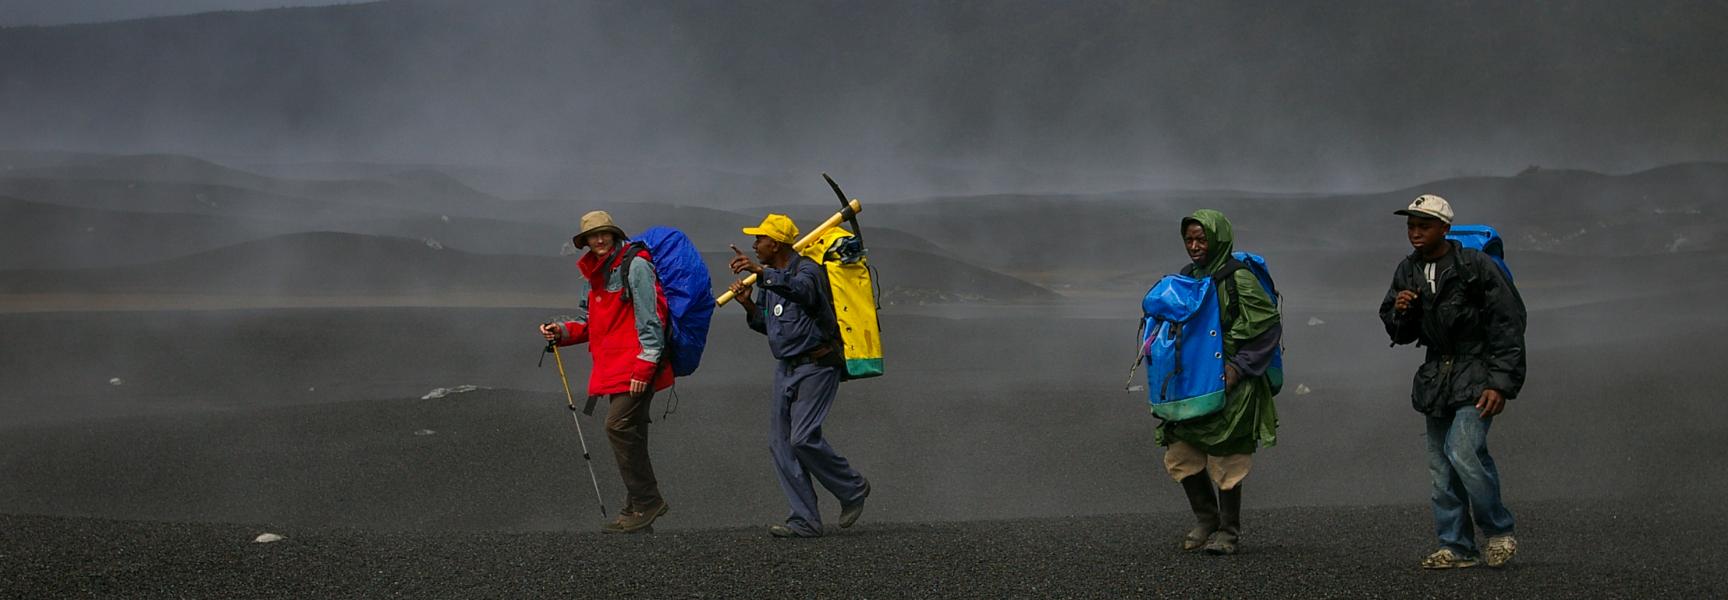 Hombres caminando en una zona volcánica en Comoras